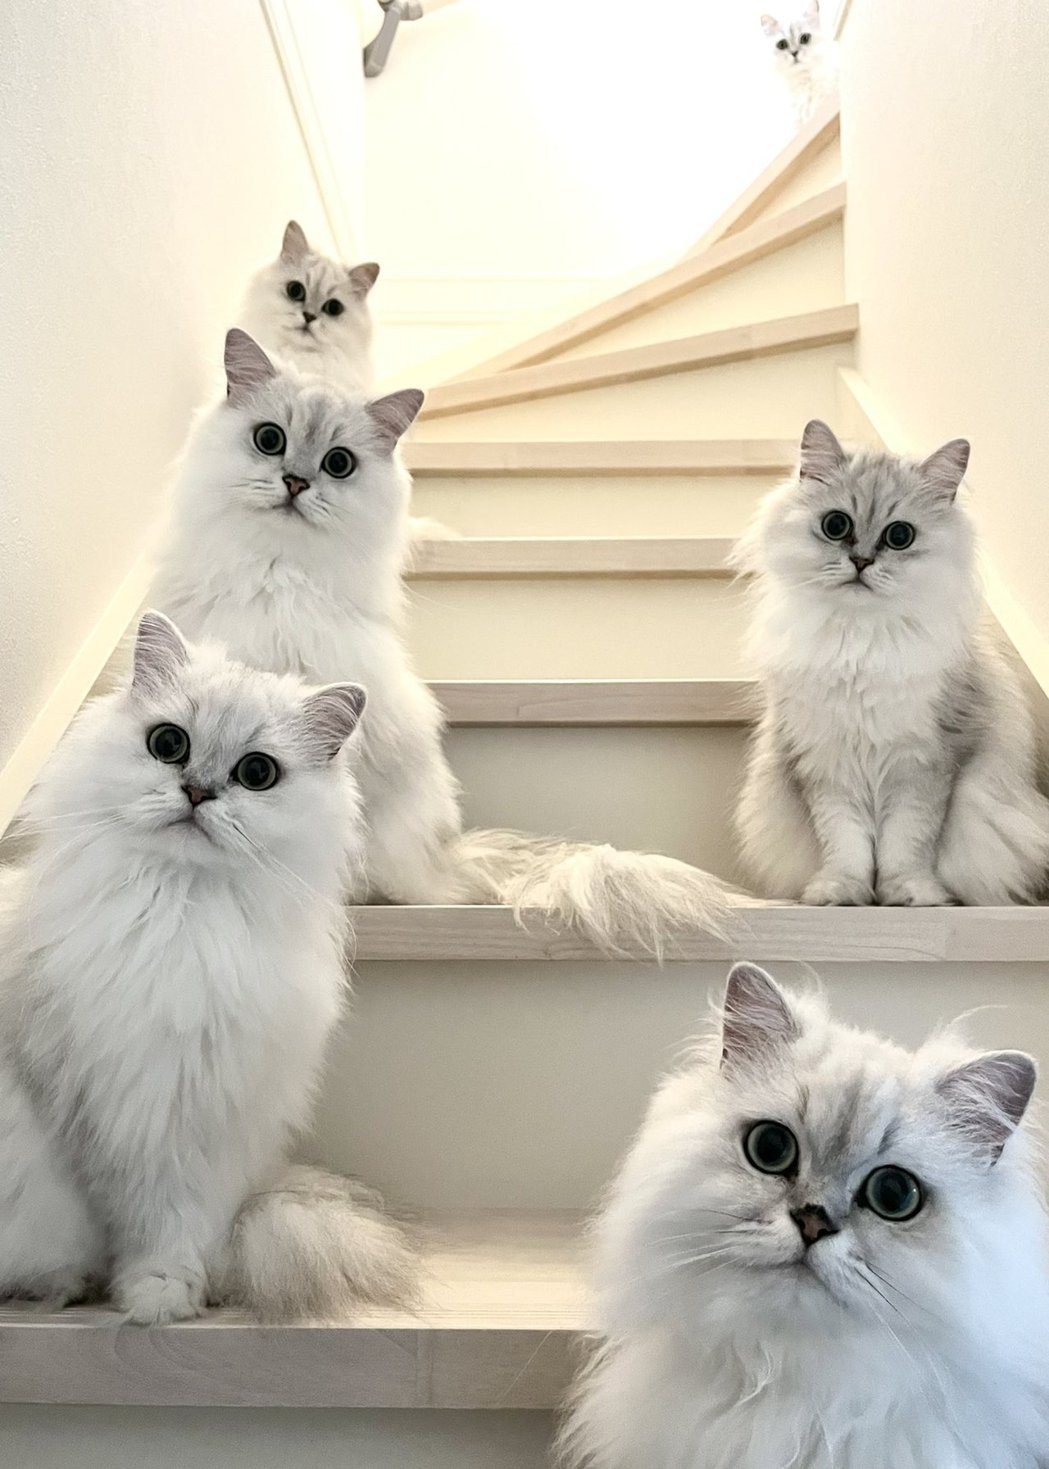 某天一名貓奴回家時看到6隻貓咪整齊排列在樓梯上，用同樣的一號表情迎接他回家。 (圖/取自推特)